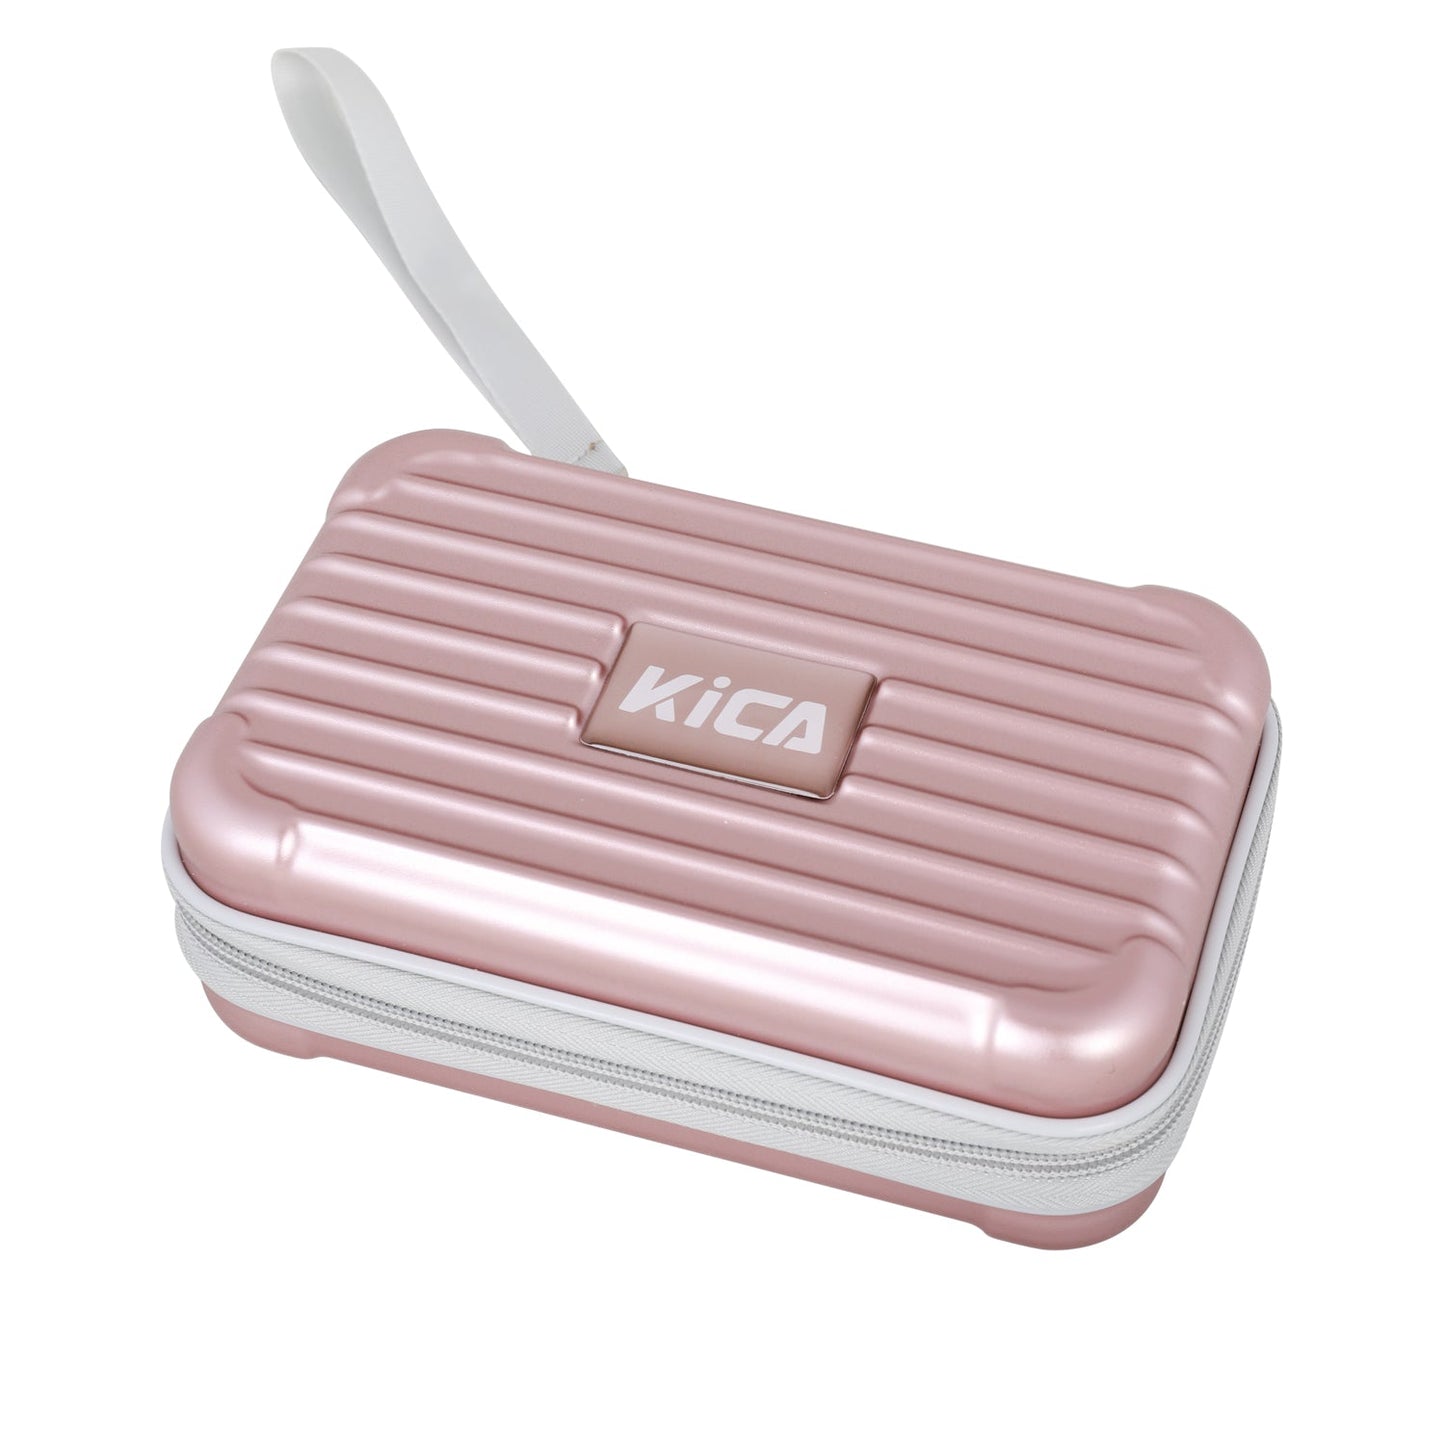 Kica K2 Deep Tissue Percussive Massage Gun (Pink)